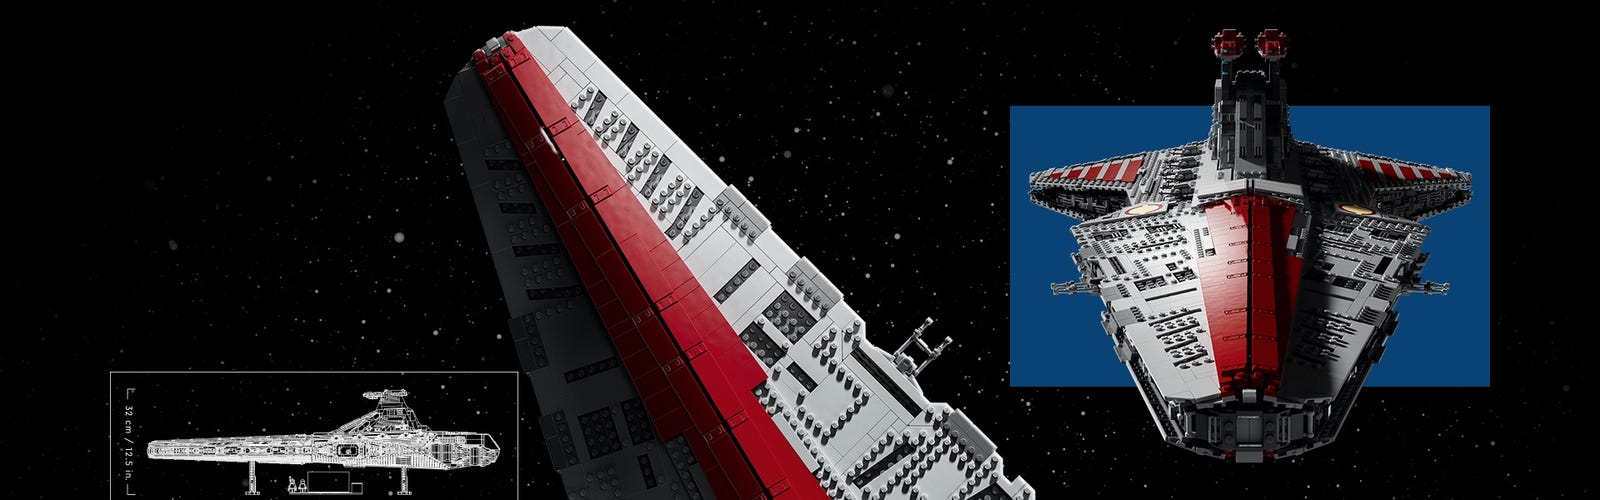 Grande image du croiseur LEGO Star Wars au centre, entourée d’images plus petites de détails du vaisseau